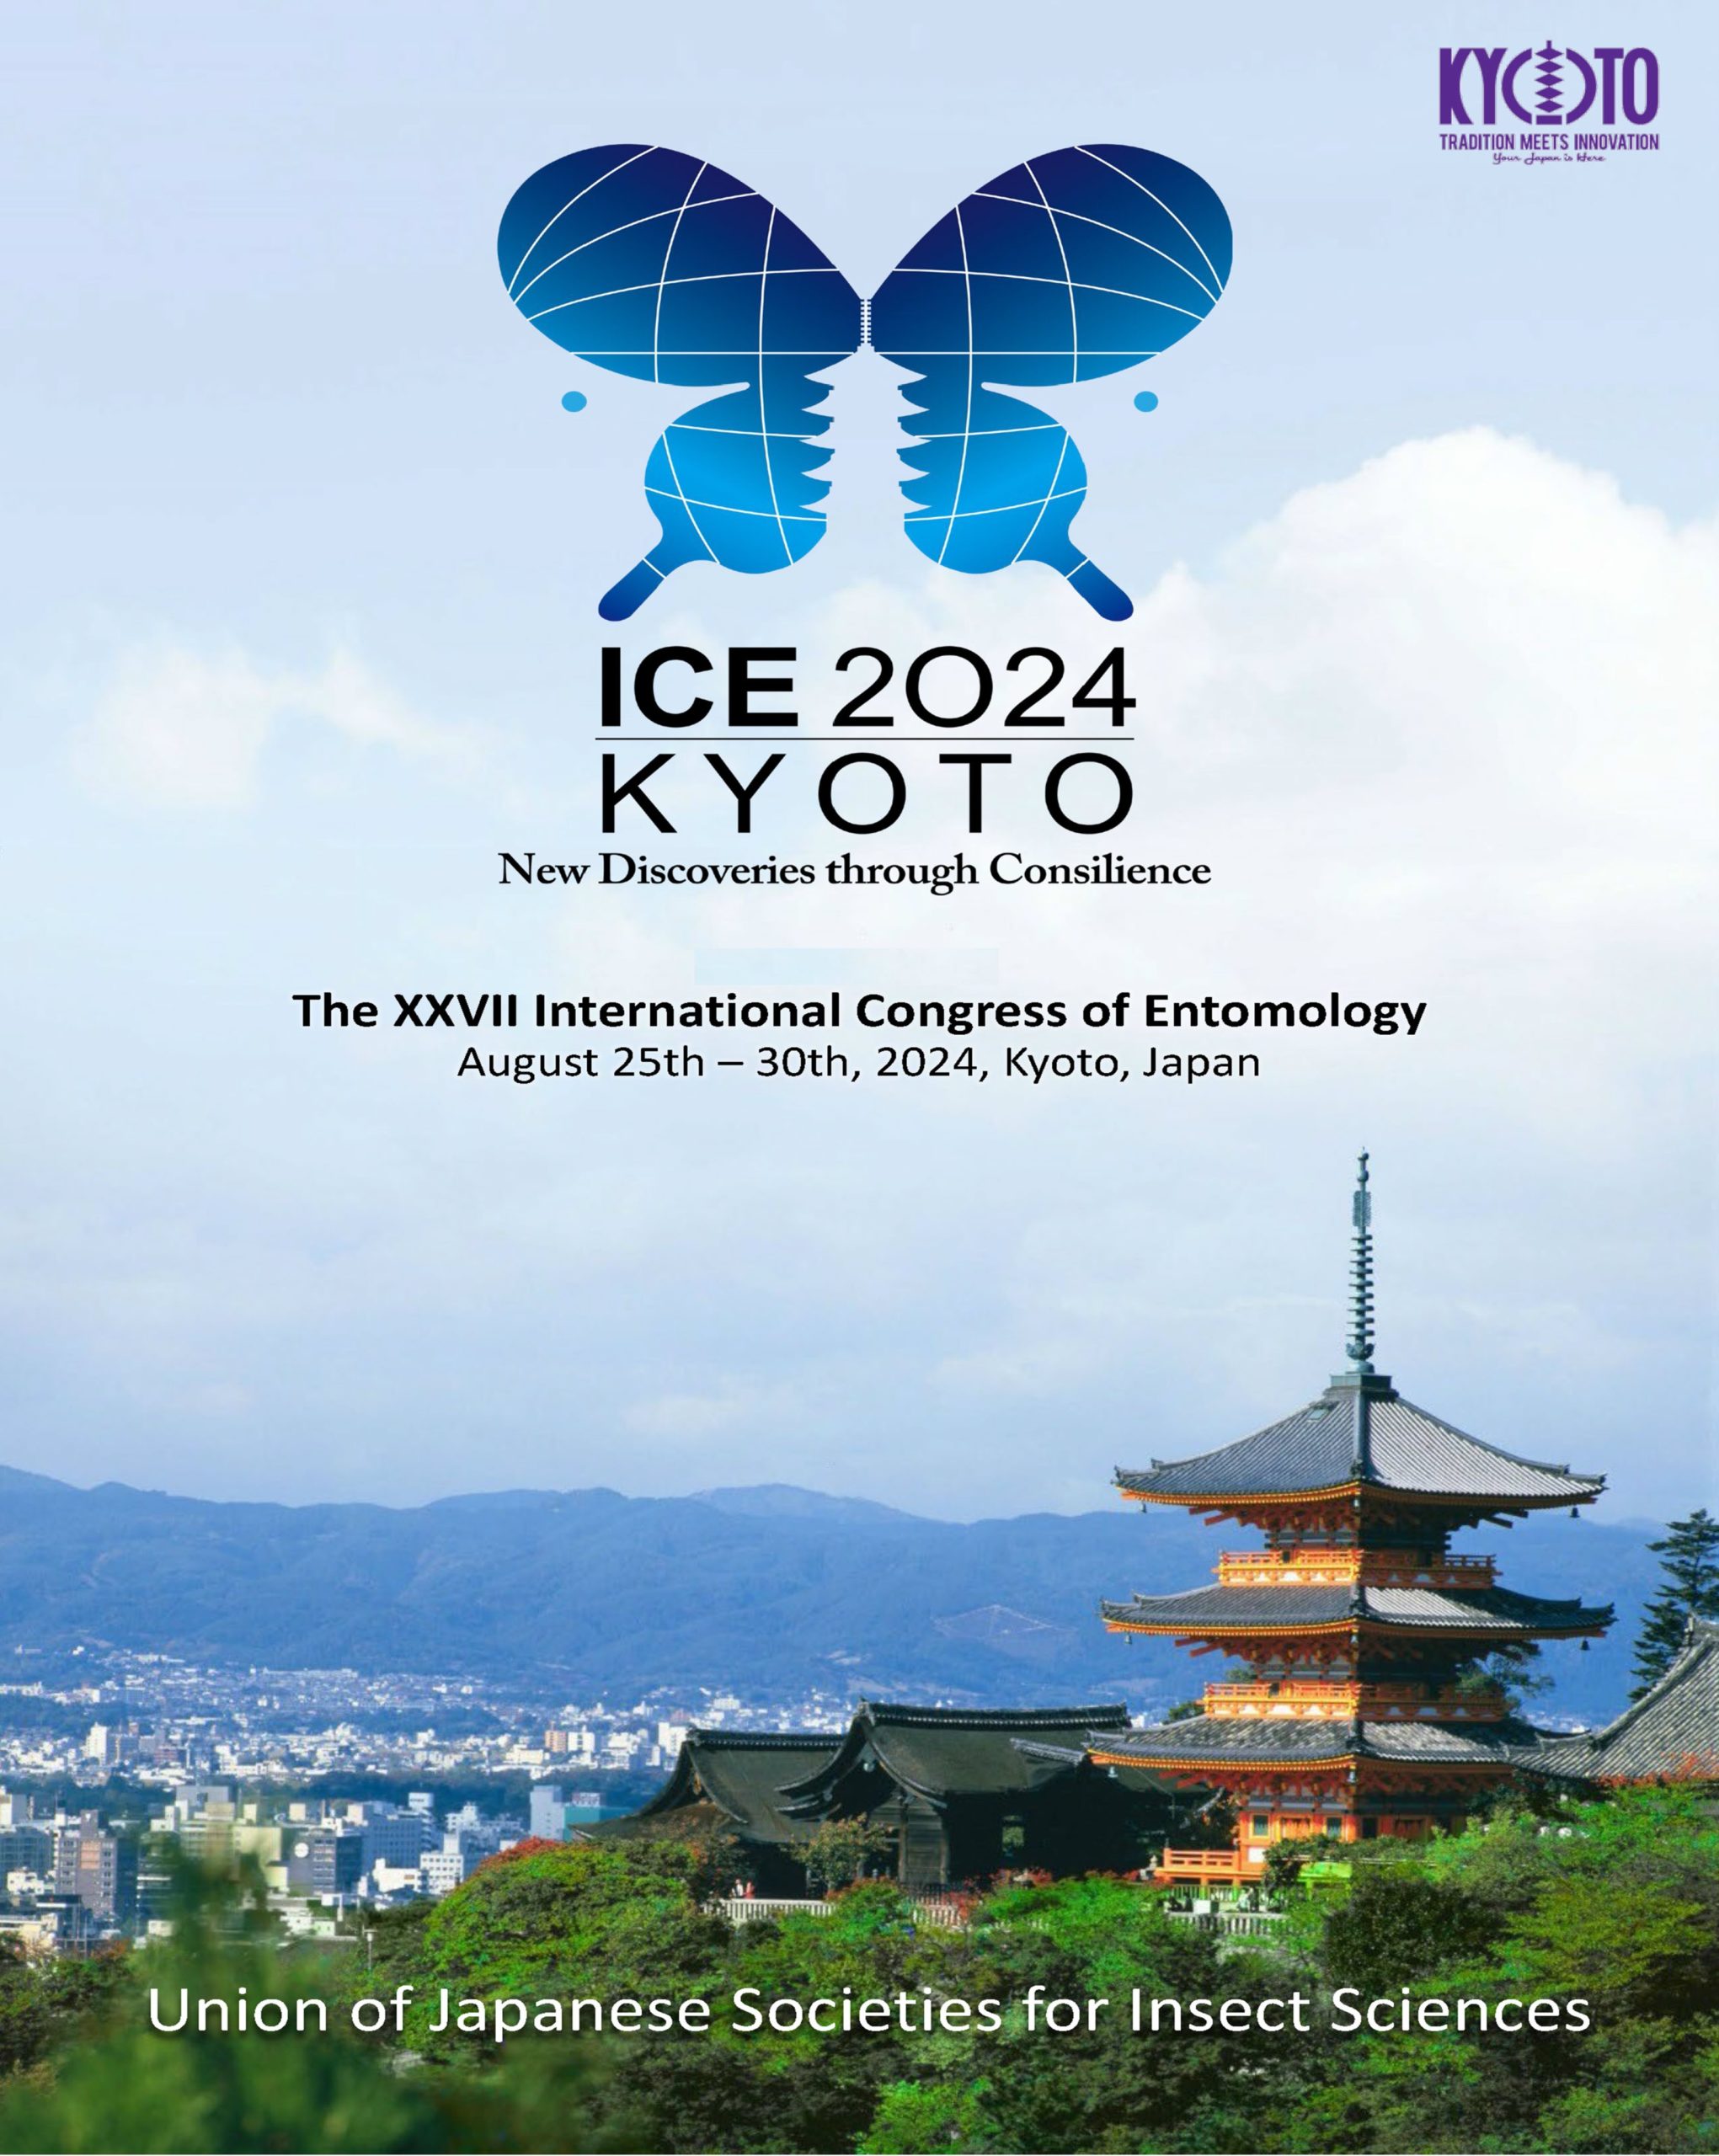 International Congress of Entomology (ICE 2024) External Event